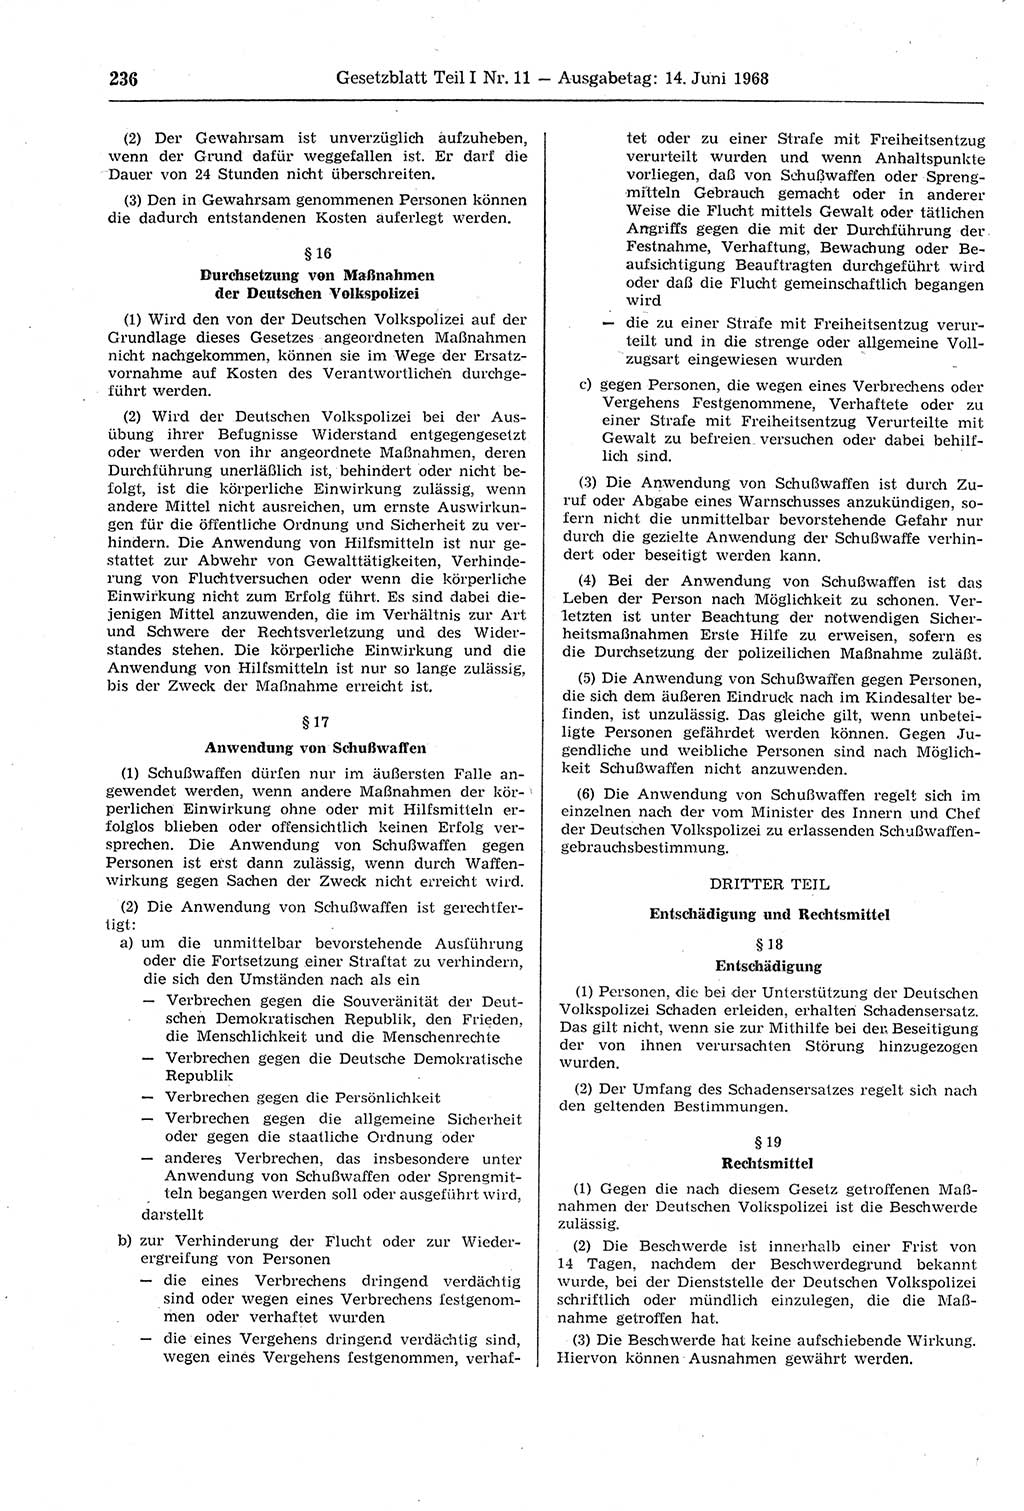 Gesetzblatt (GBl.) der Deutschen Demokratischen Republik (DDR) Teil Ⅰ 1968, Seite 236 (GBl. DDR Ⅰ 1968, S. 236)